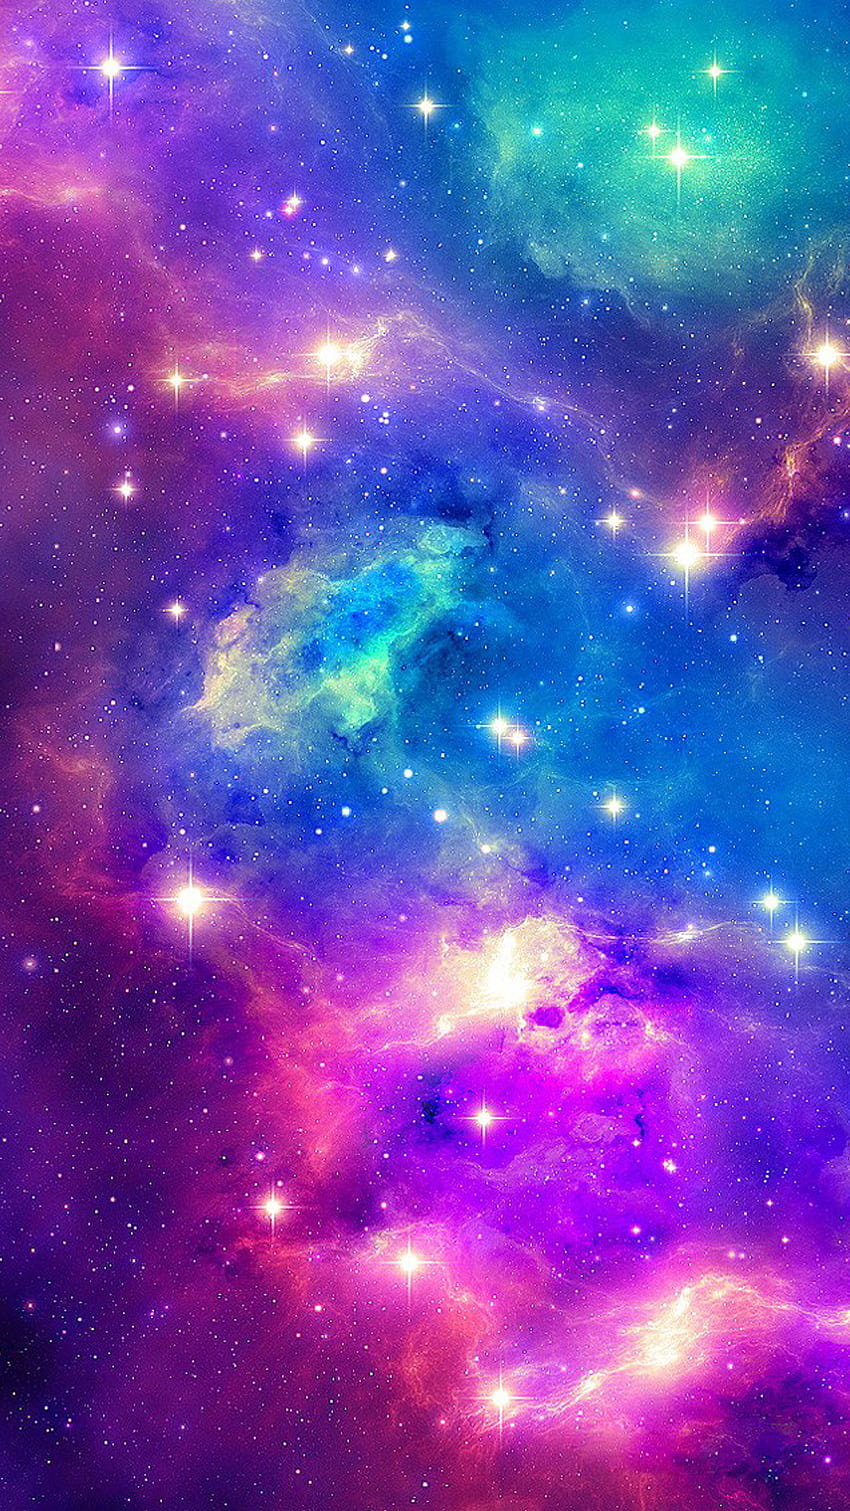 Bạn đang tìm kiếm hình nền vũ trụ độc đáo và đẹp? Hãy trải nghiệm những tông màu xanh tím đầy mê hoặc với hình nền vũ trụ yêu thích của tôi. Sự kết hợp độc đáo giữa hai tông màu này sẽ giúp cho trang trí máy tính của bạn trở nên thú vị hơn bao giờ hết.